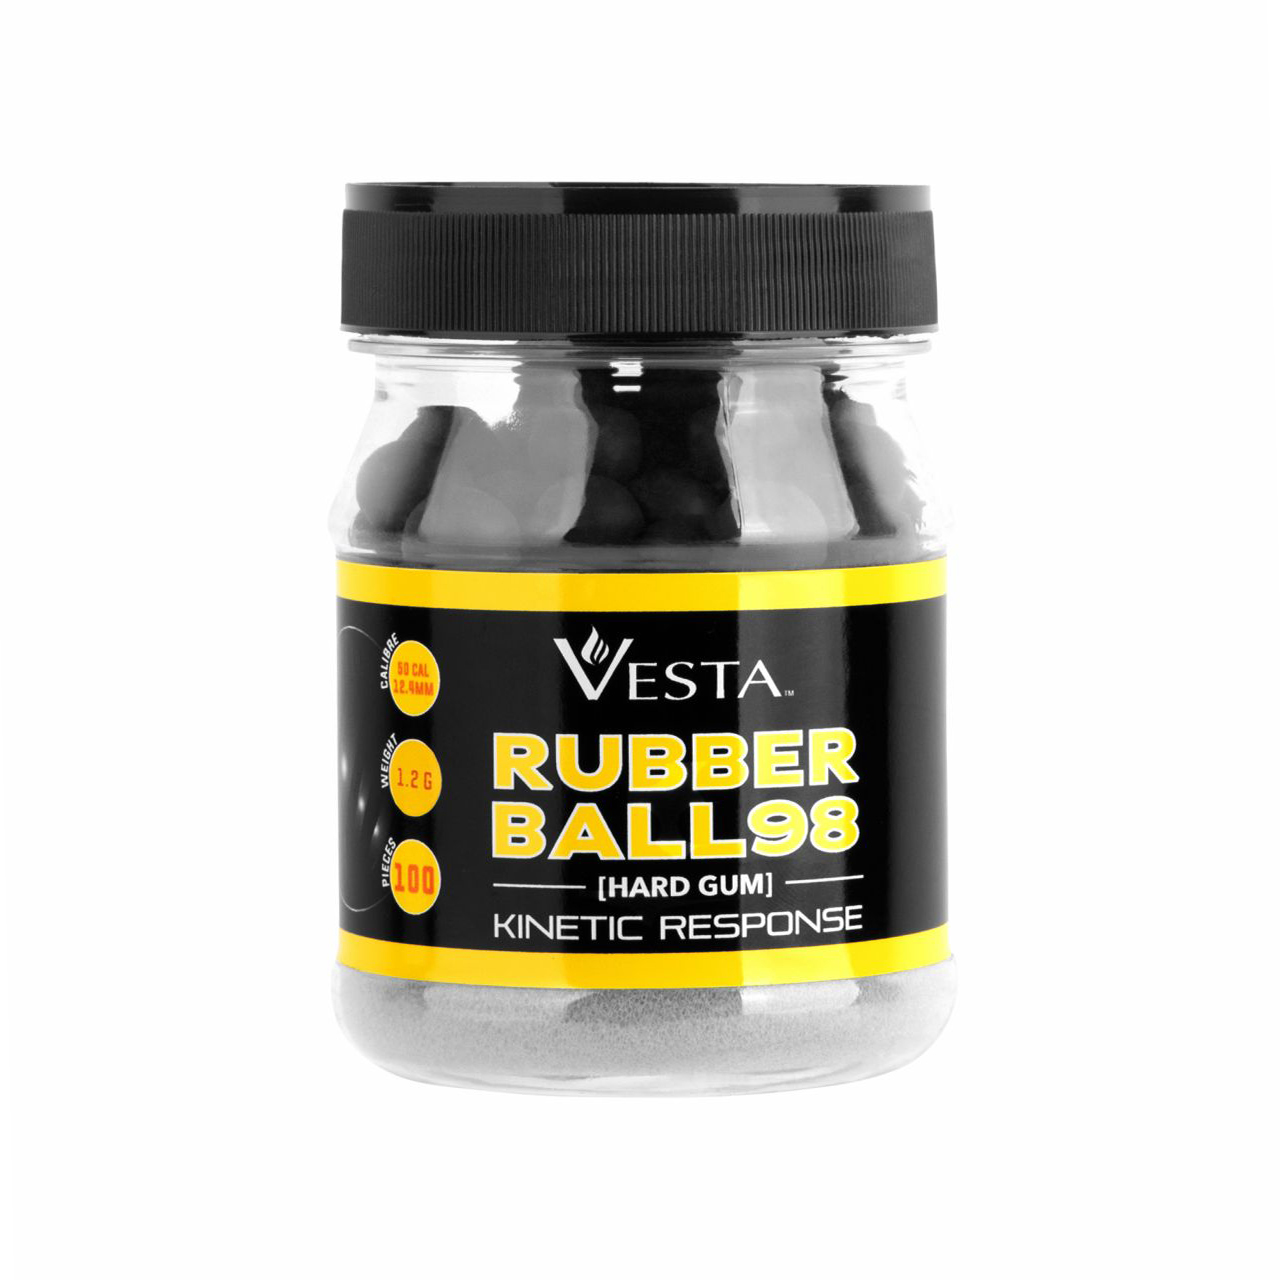 Vesta Rubber Ball 98 .50 Kaliber 100 st